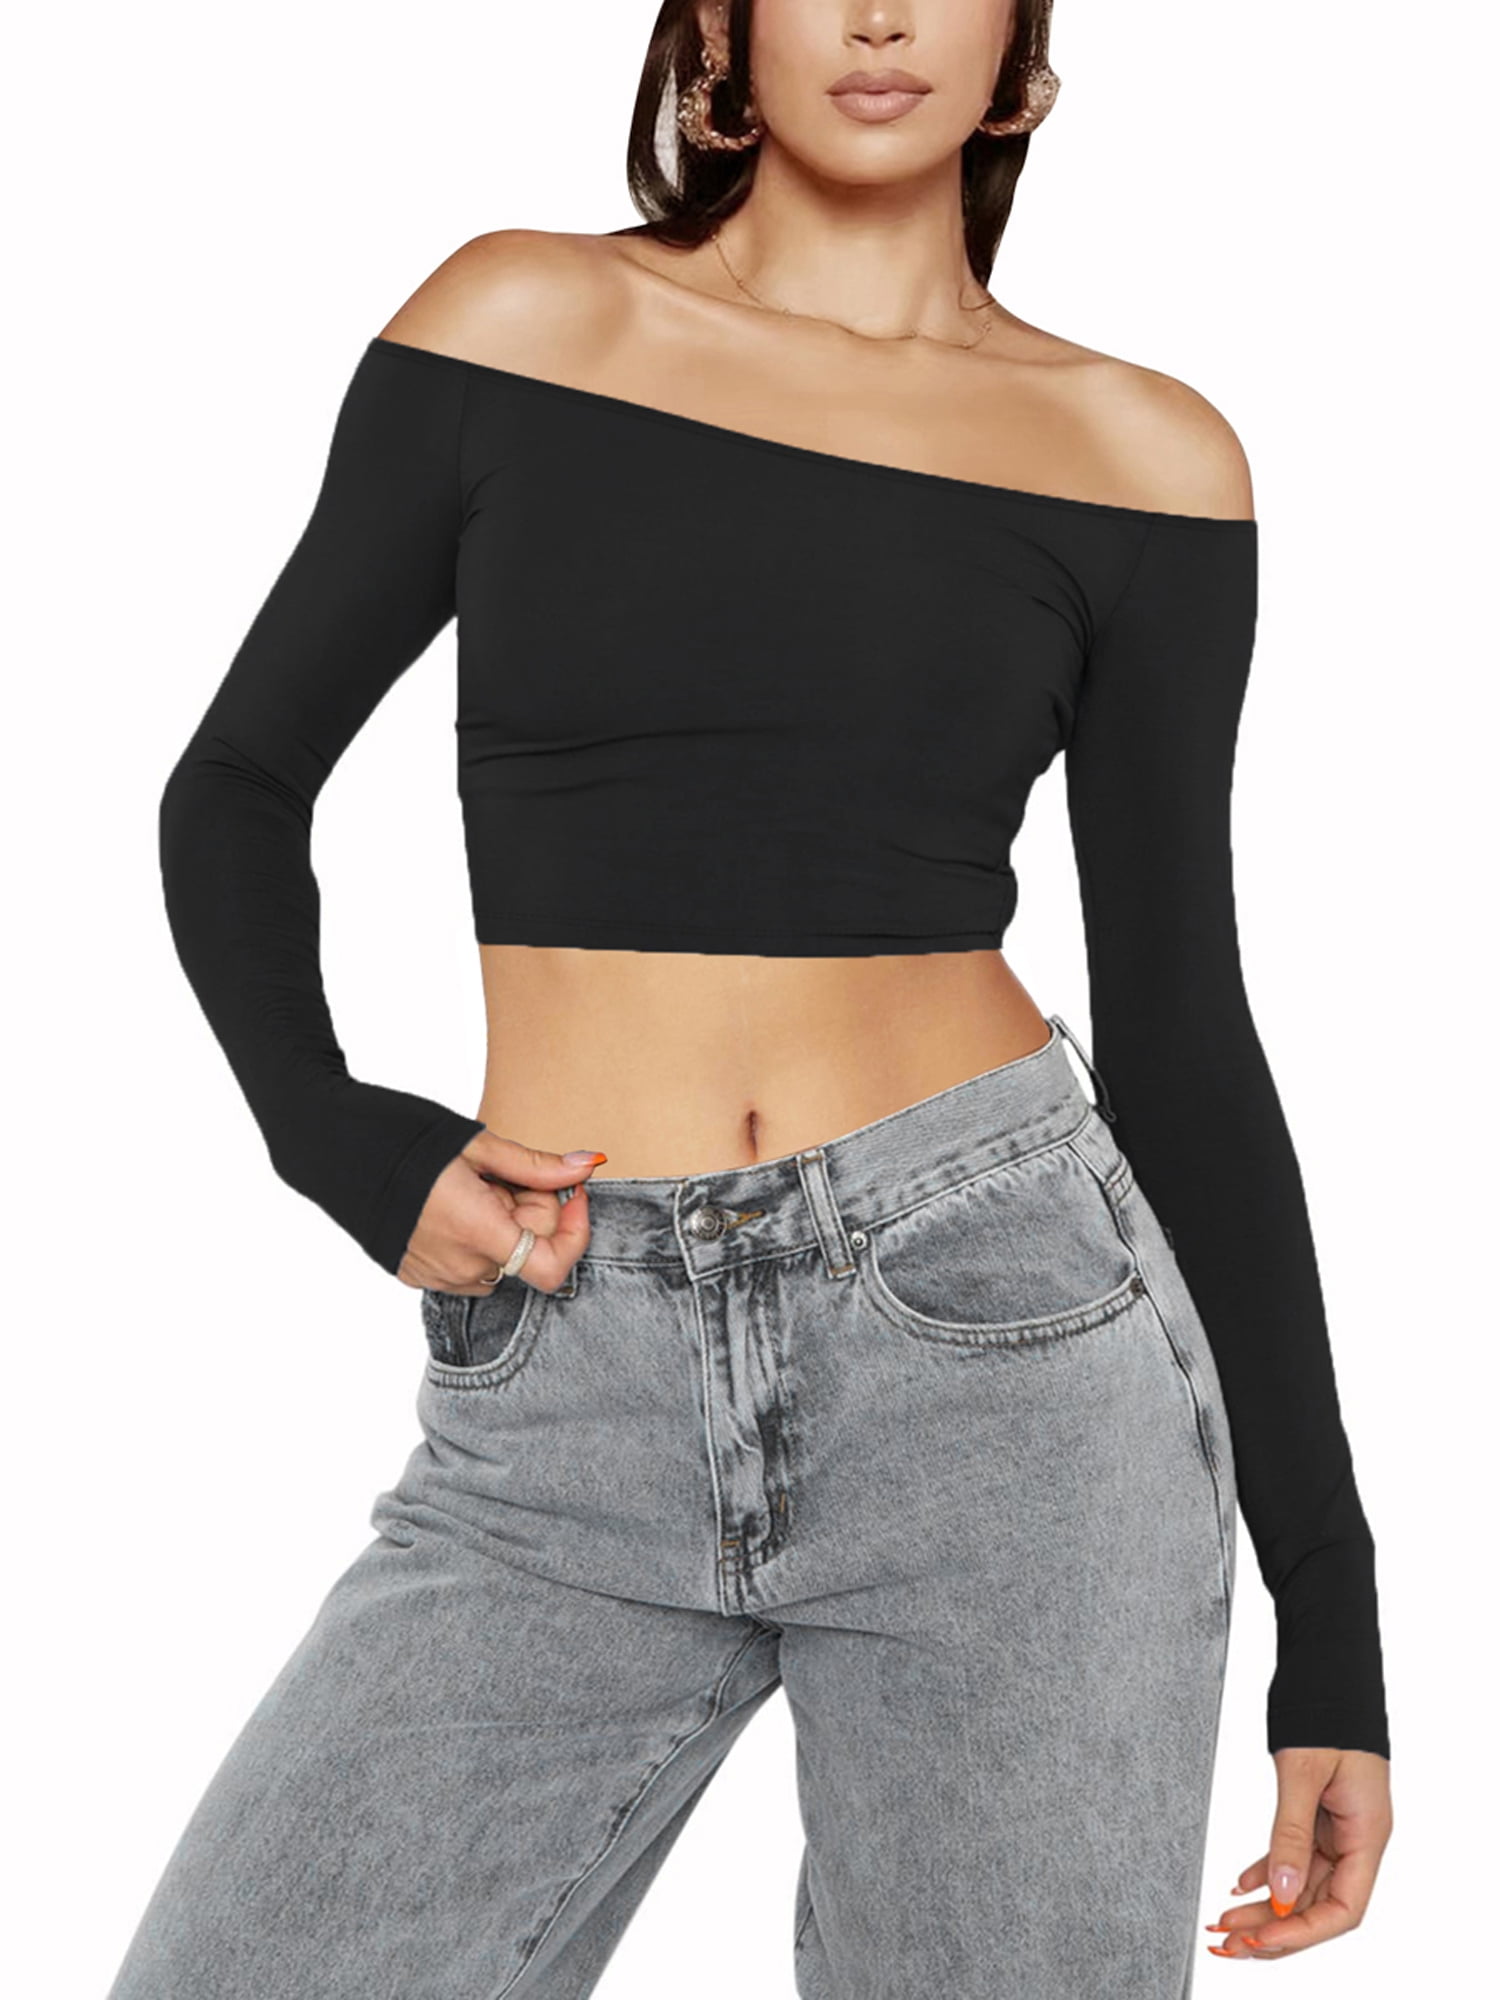 Tilbageholde Uretfærdig alder Women Off Shoulder Slim Fit Crop Top Long Sleeve Going Out Tops Backless  Solid Tee Shirt Y2k Blouse - Walmart.com